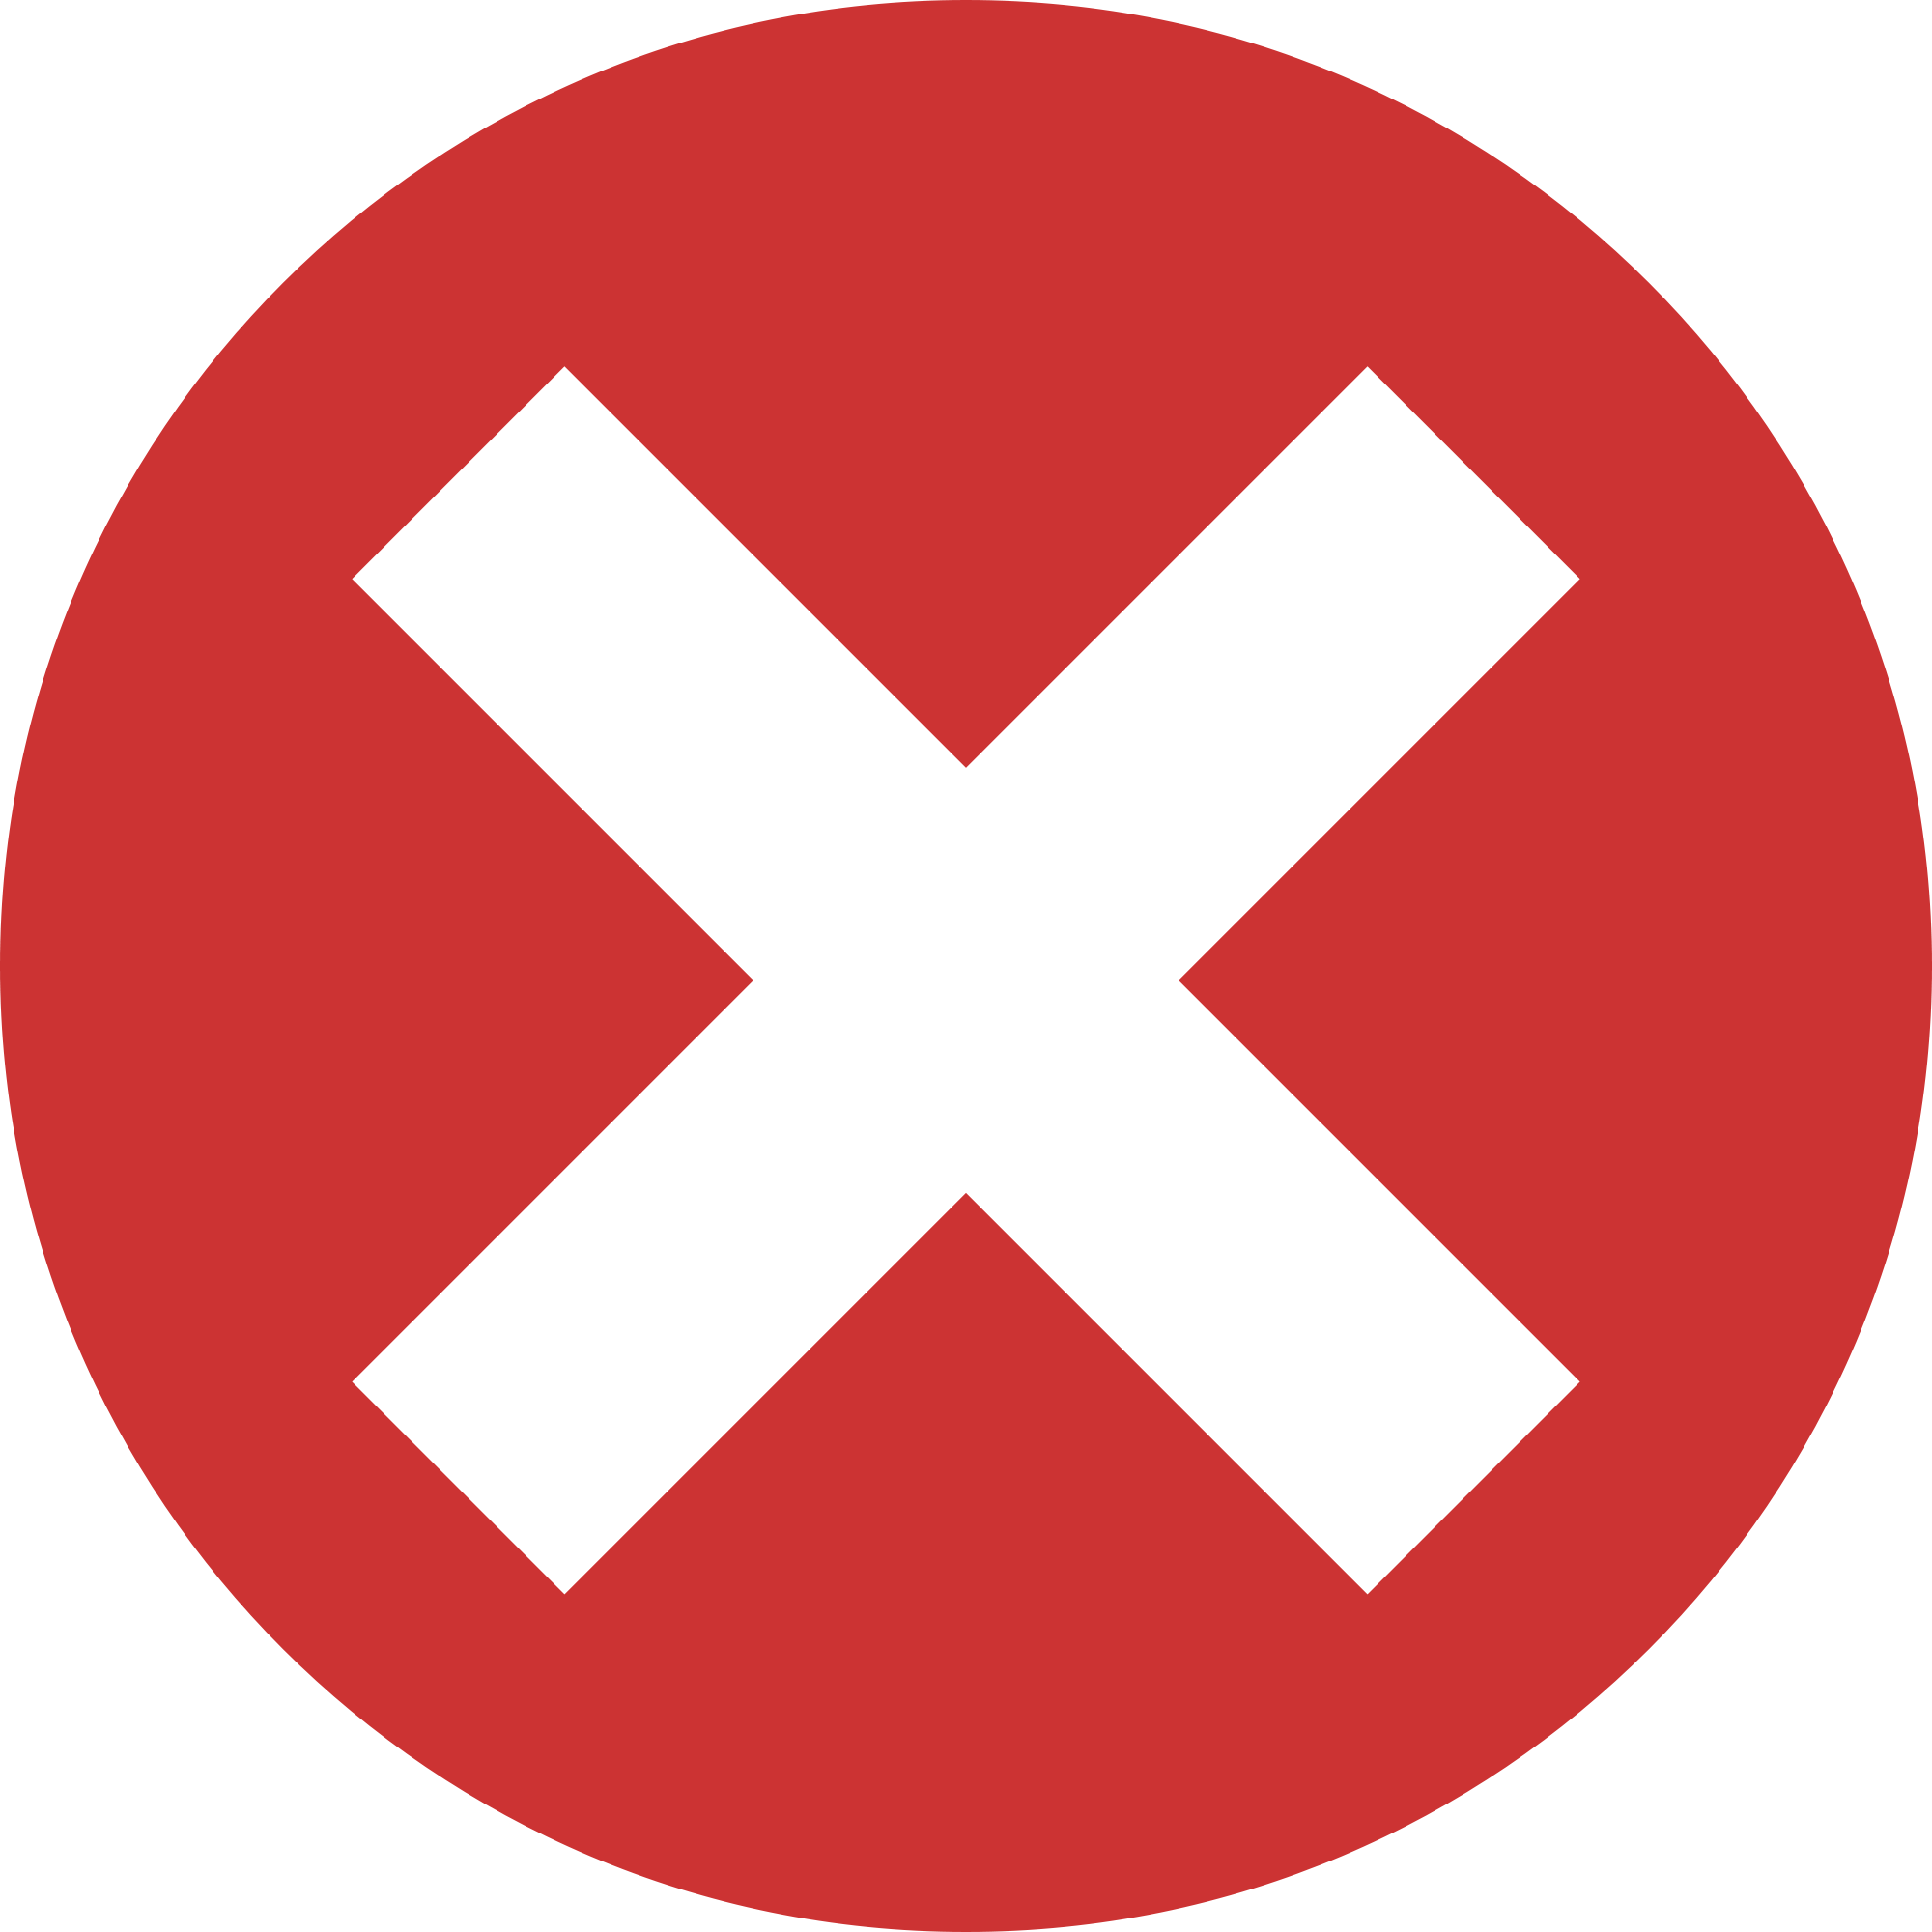 Cancel, close, delete, exit, remove, x icon | Icon search engine